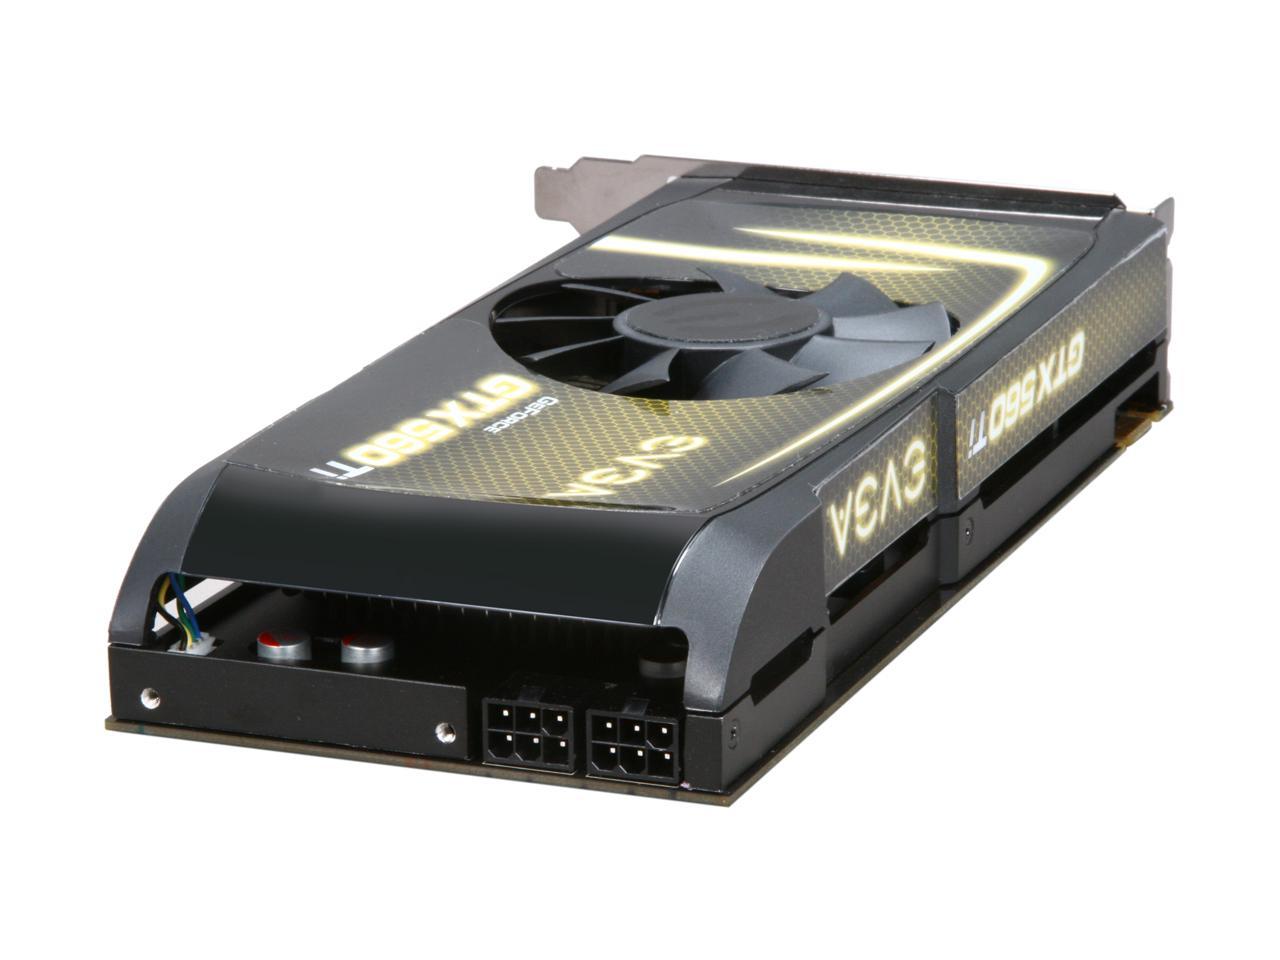 EVGA 01G-P3-1561-AR GeForce GTX 560 Ti FPB (Fermi) 1GB 256-bit GDDR5 PCI Express 2.0 x16 HDCP Ready SLI Support Video Card